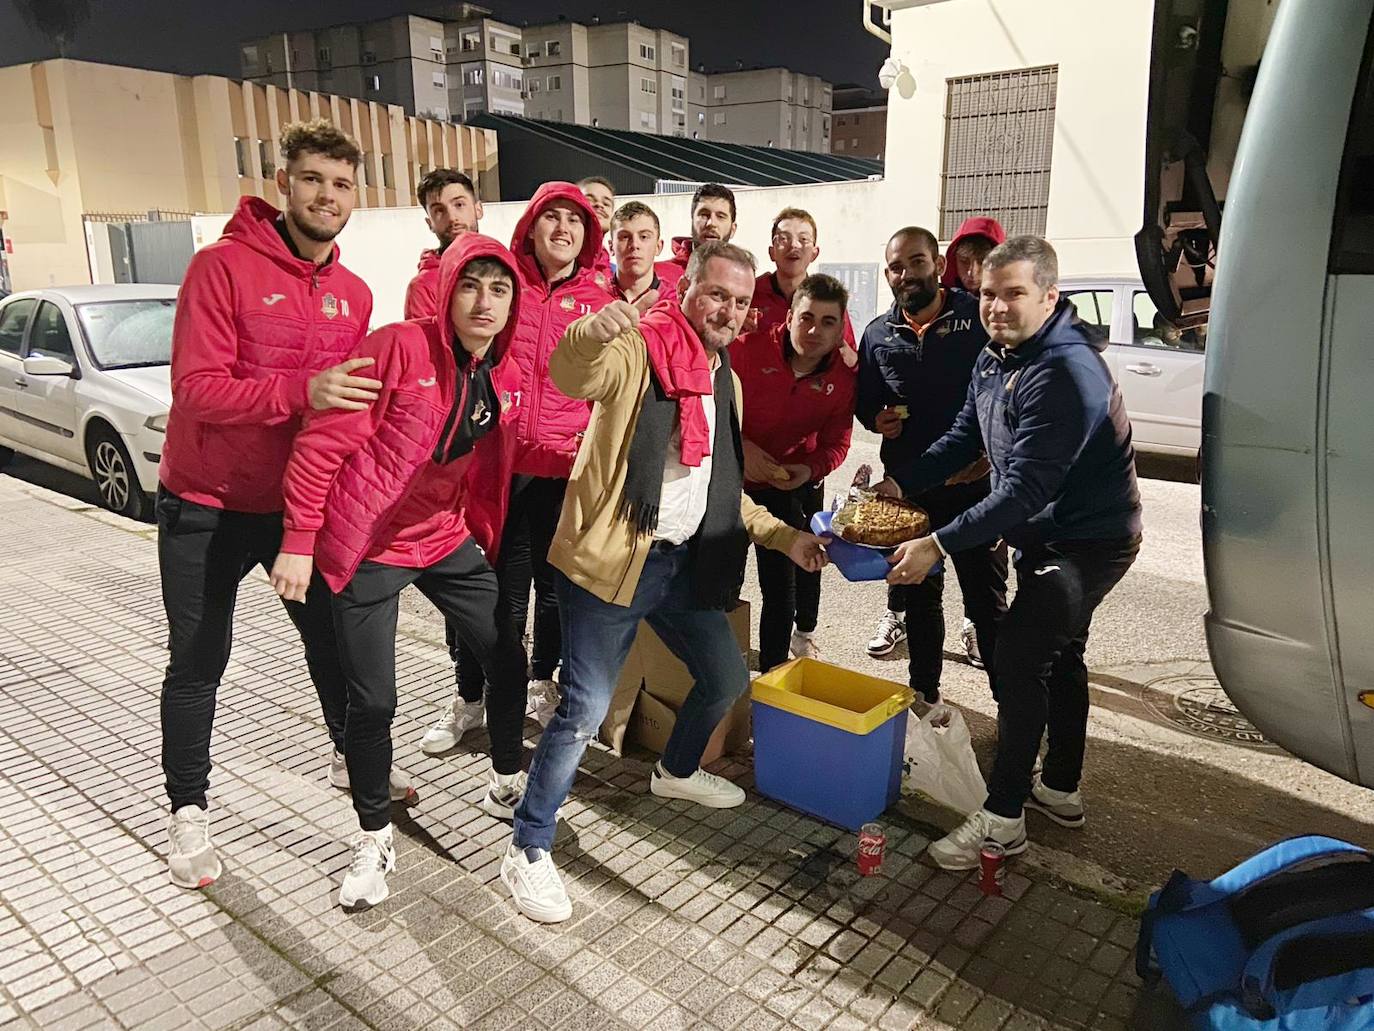 El equipo de Sergio Pacheco reponiendo fuerzas tras el partido y celebrando el cumpleaños de Rubén, degustando una tarta antes de emprender el viaje de regreso a Jaraíz de la Vera. 